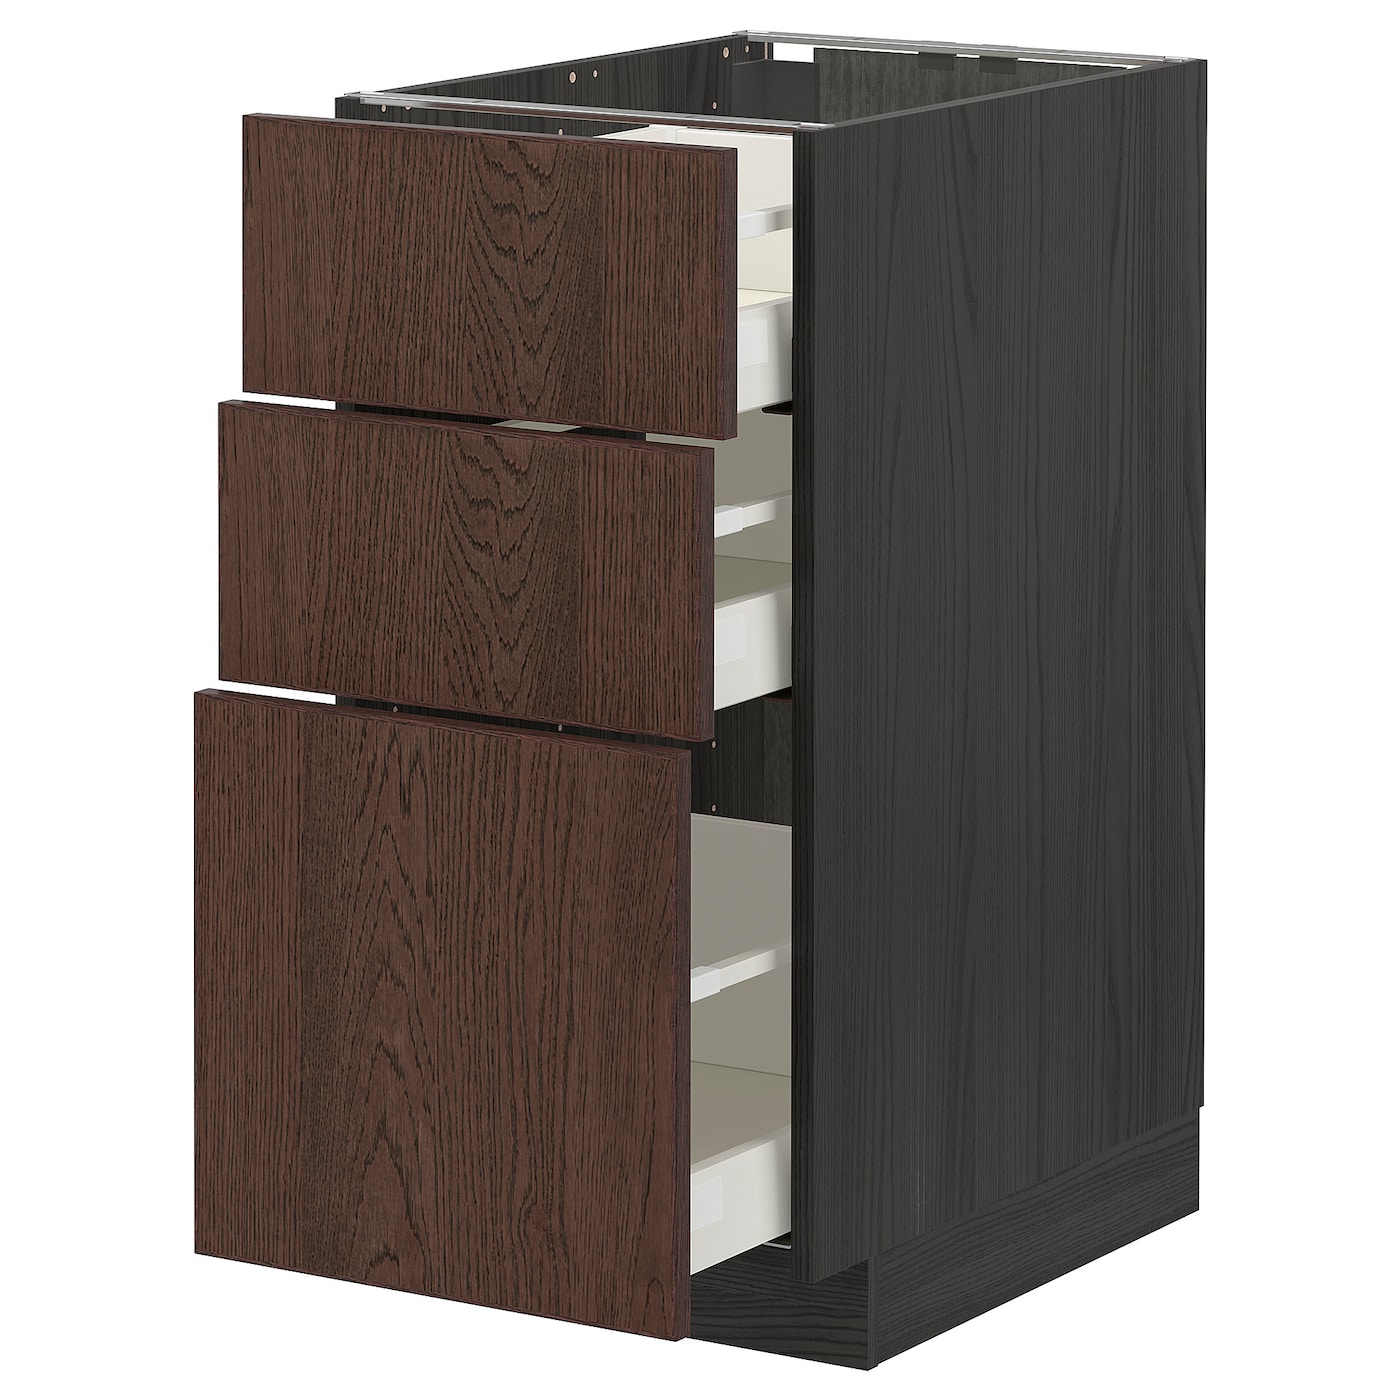 Напольный шкаф - IKEA METOD MAXIMERA, 88x62x40см, темно-коричневый/черный, МЕТОД МАКСИМЕРА ИКЕА